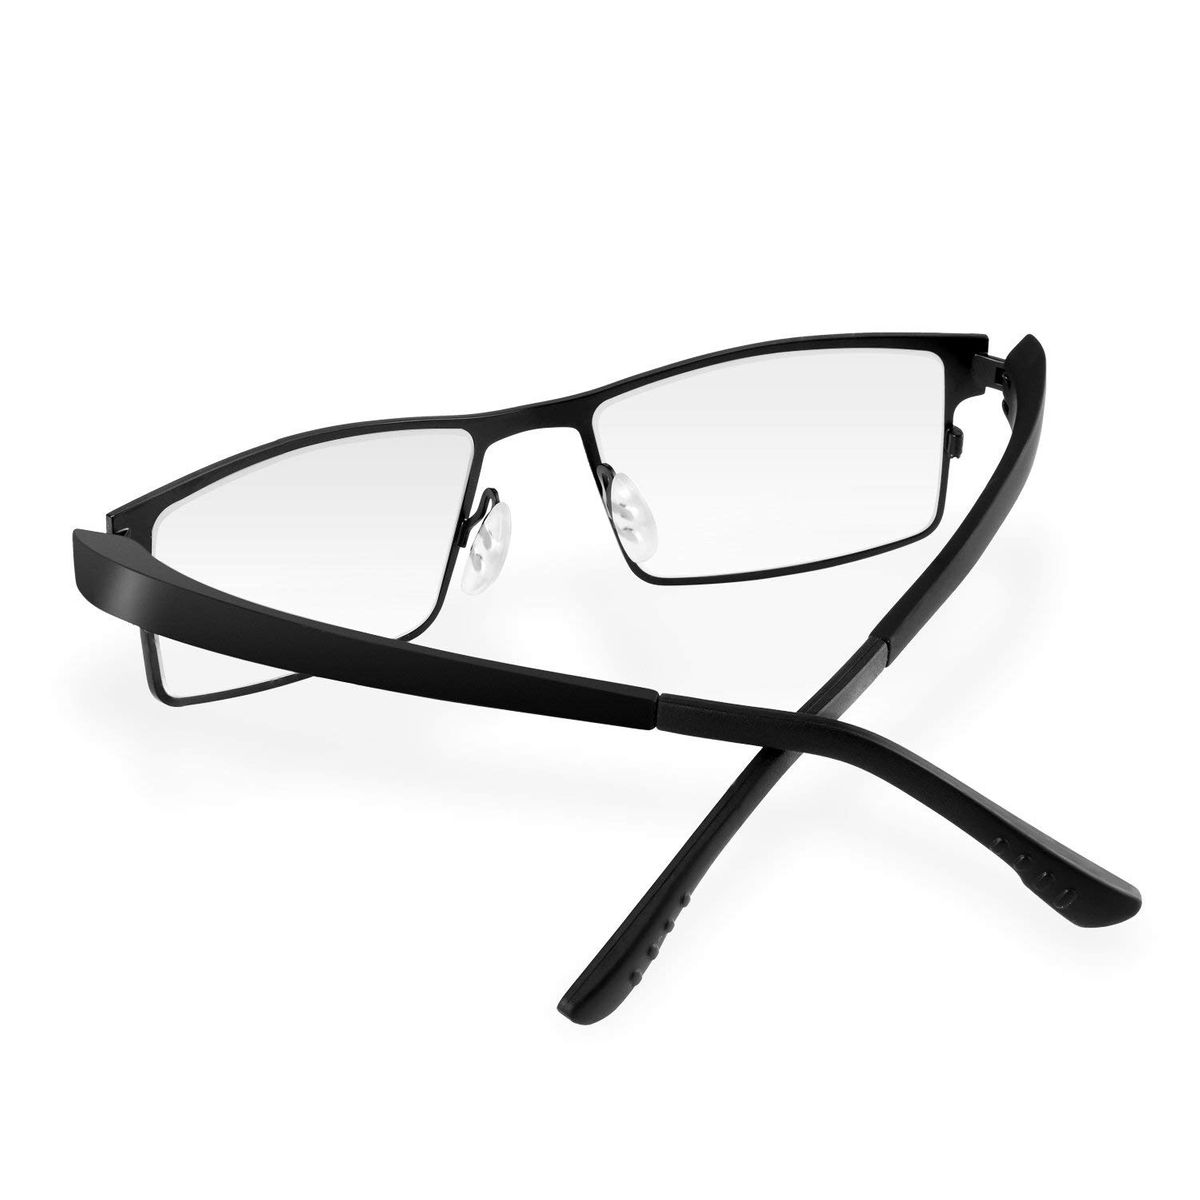 KLIM Protect Anti Blaulichtbrille Klare Gläser Hoher Schutz aus TR90 Material